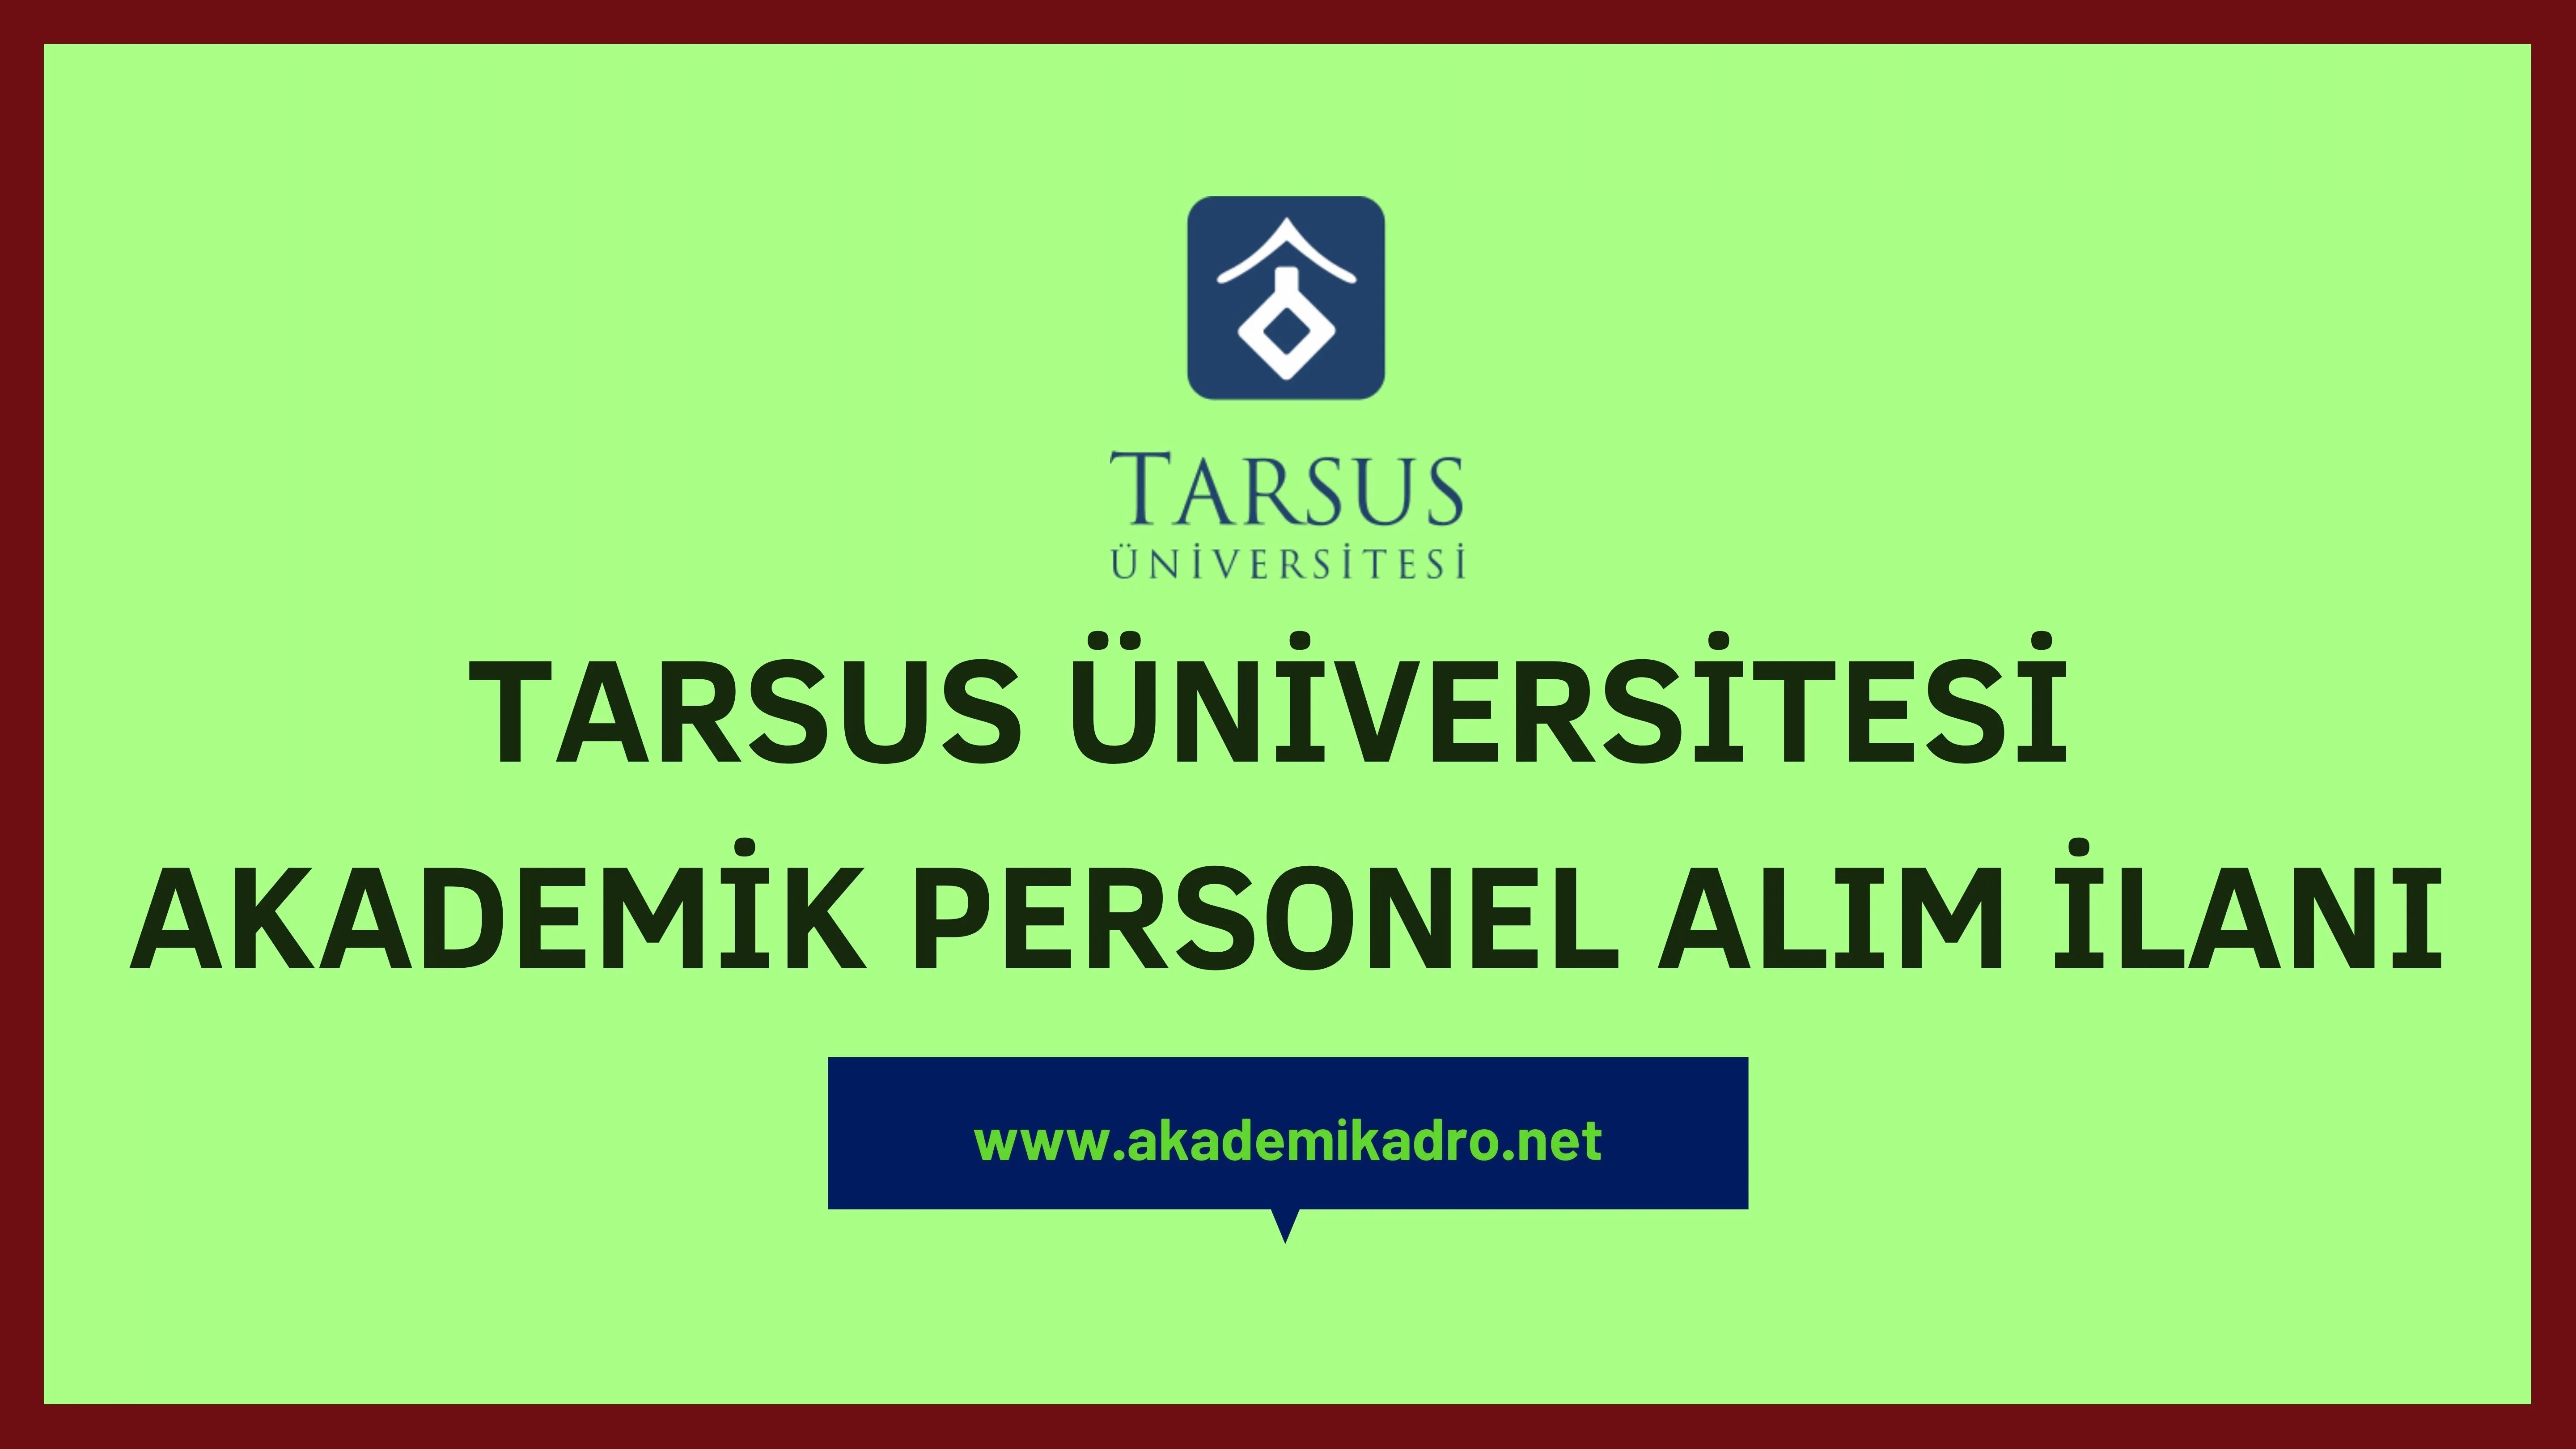 Tarsus Üniversitesi birçok alandan 9 akademik personel alacak.